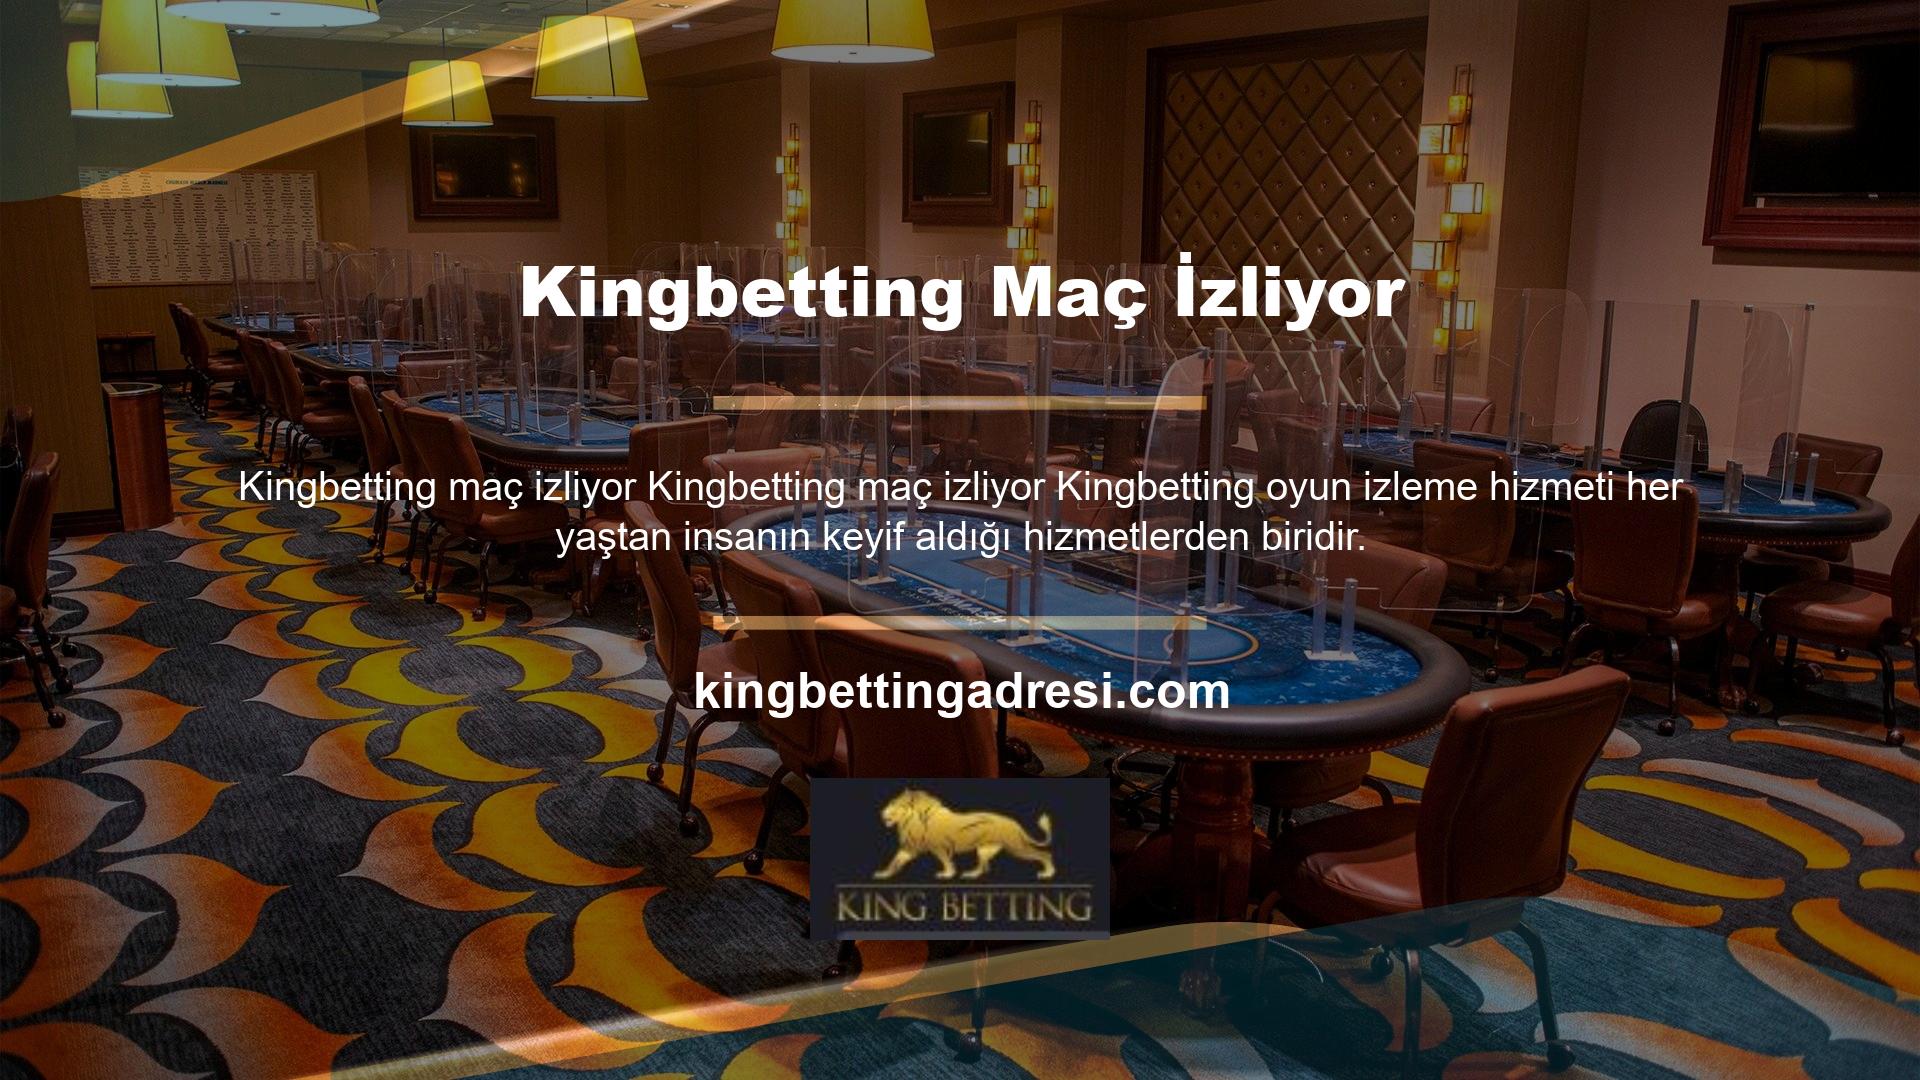 Kingbetting, Türkiye'de bahis hizmetleri sunan bir bahis sitesidir